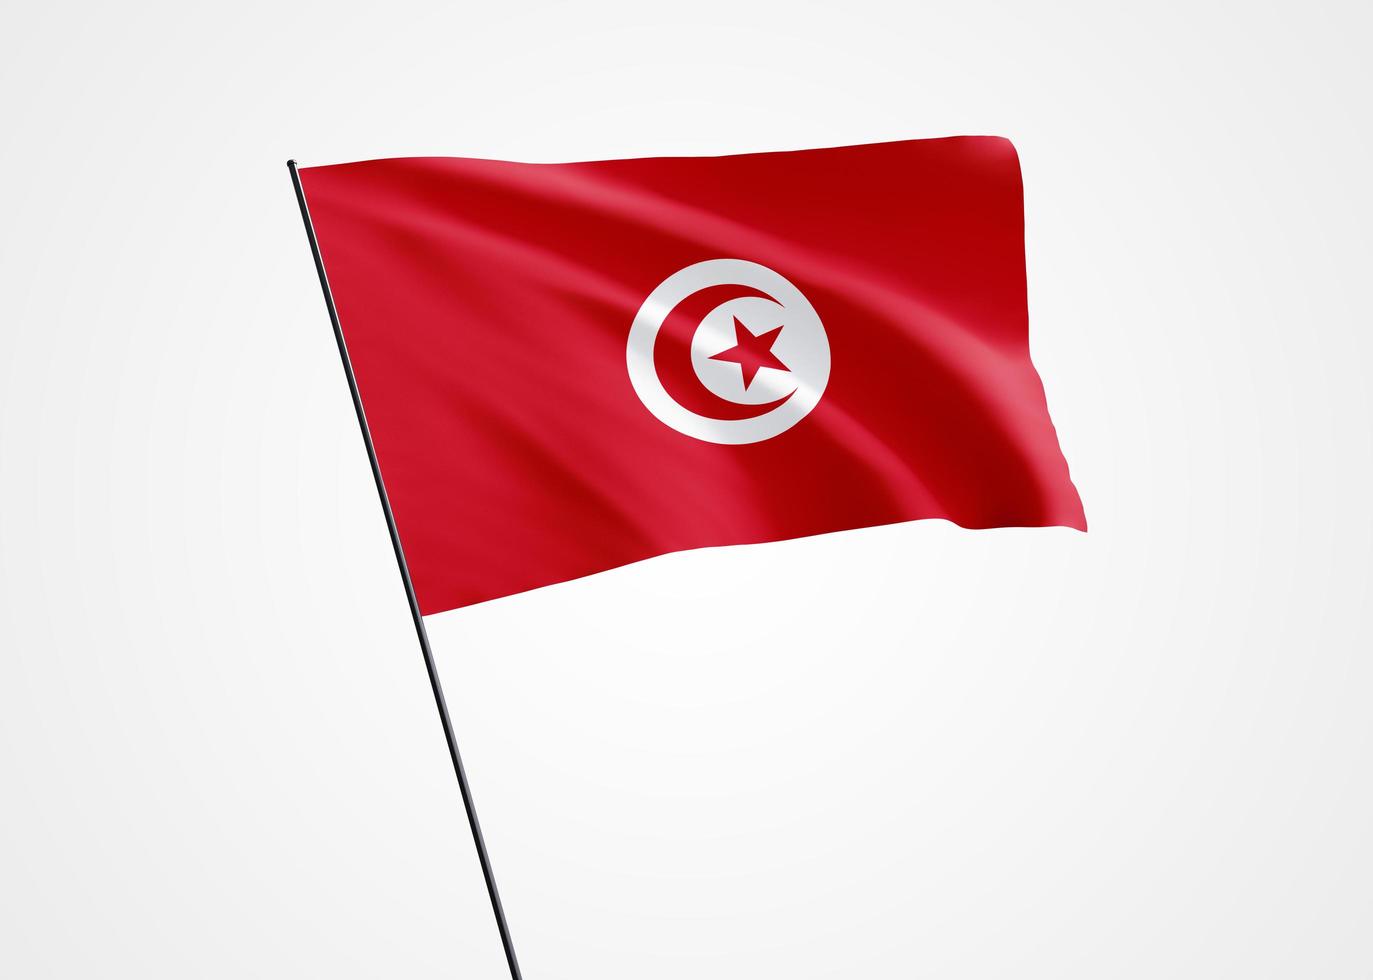 bandeira de tunis voando alto no fundo branco isolado. 20 de março, dia da independência de tunis. coleção da bandeira nacional do mundo coleção da bandeira nacional do mundo foto